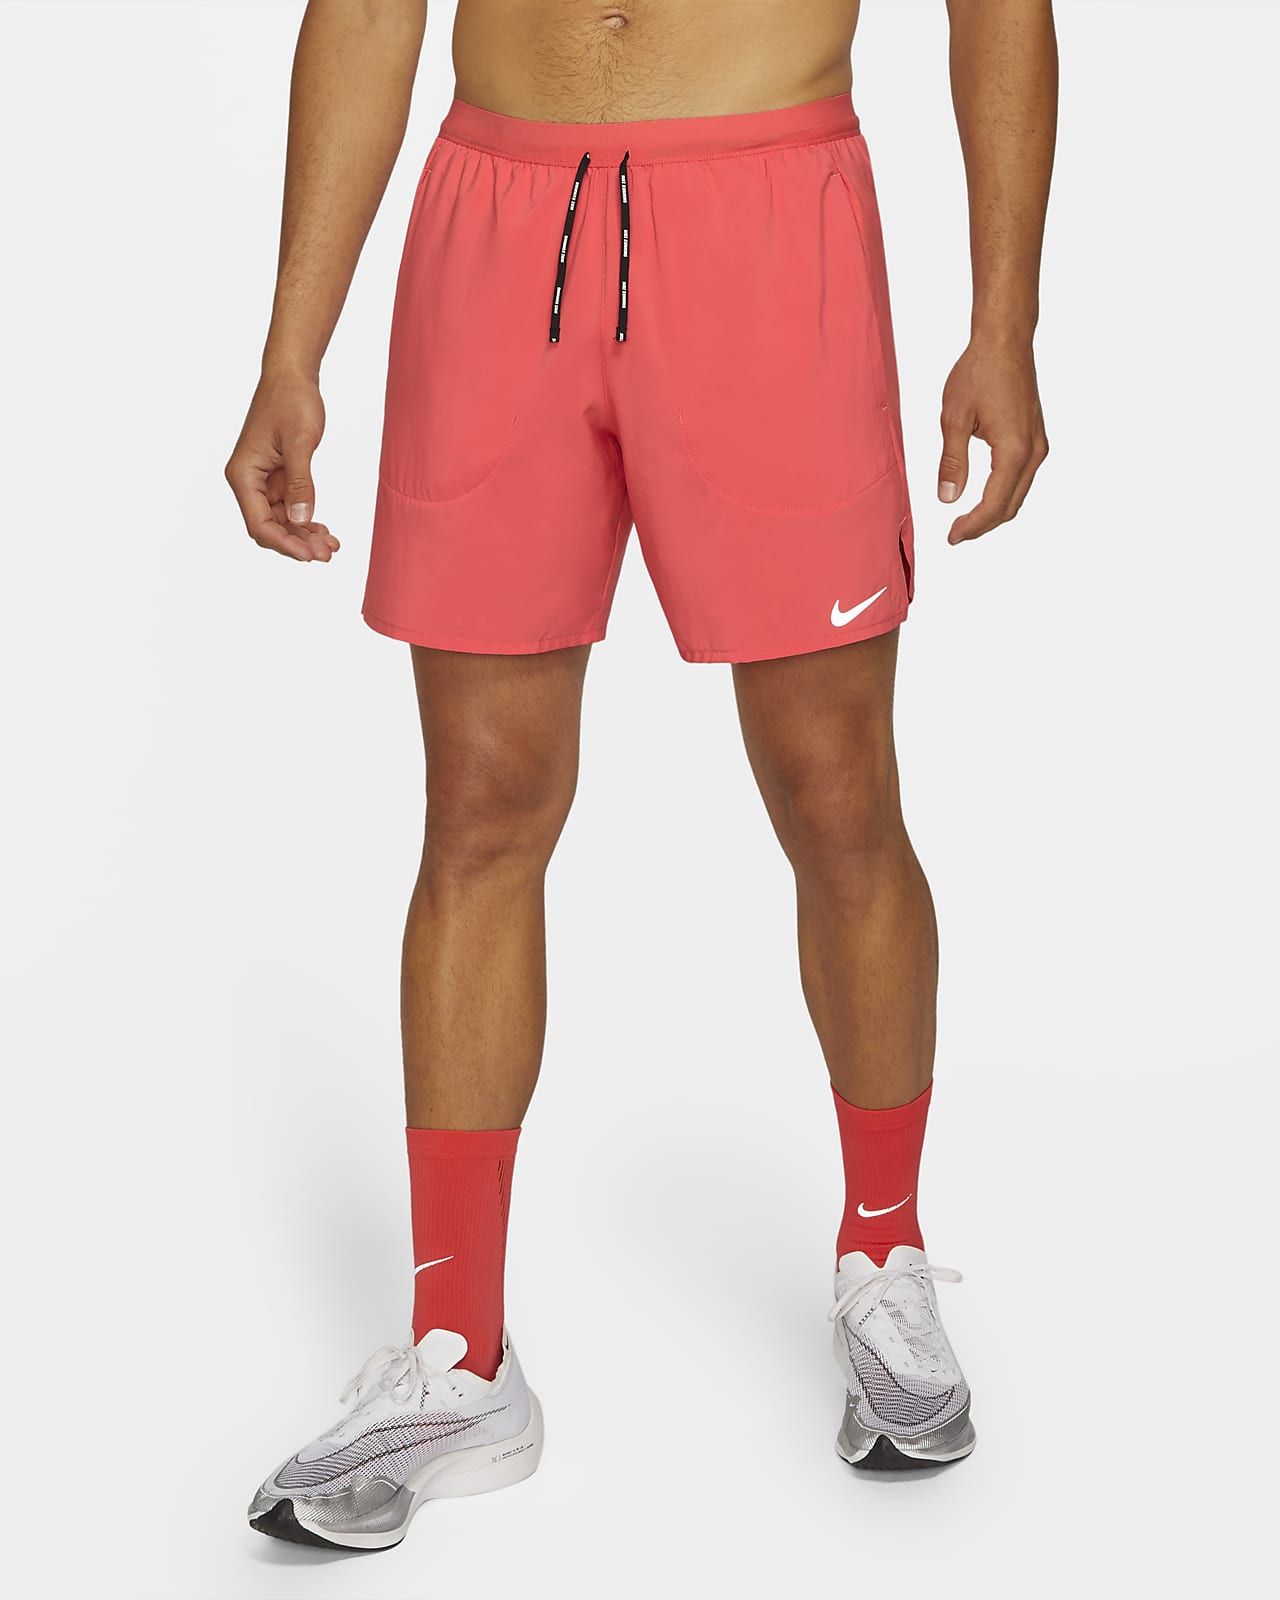 Shorts de running con ropa interior de 18 cm para hombre Nike Flex Stride.  